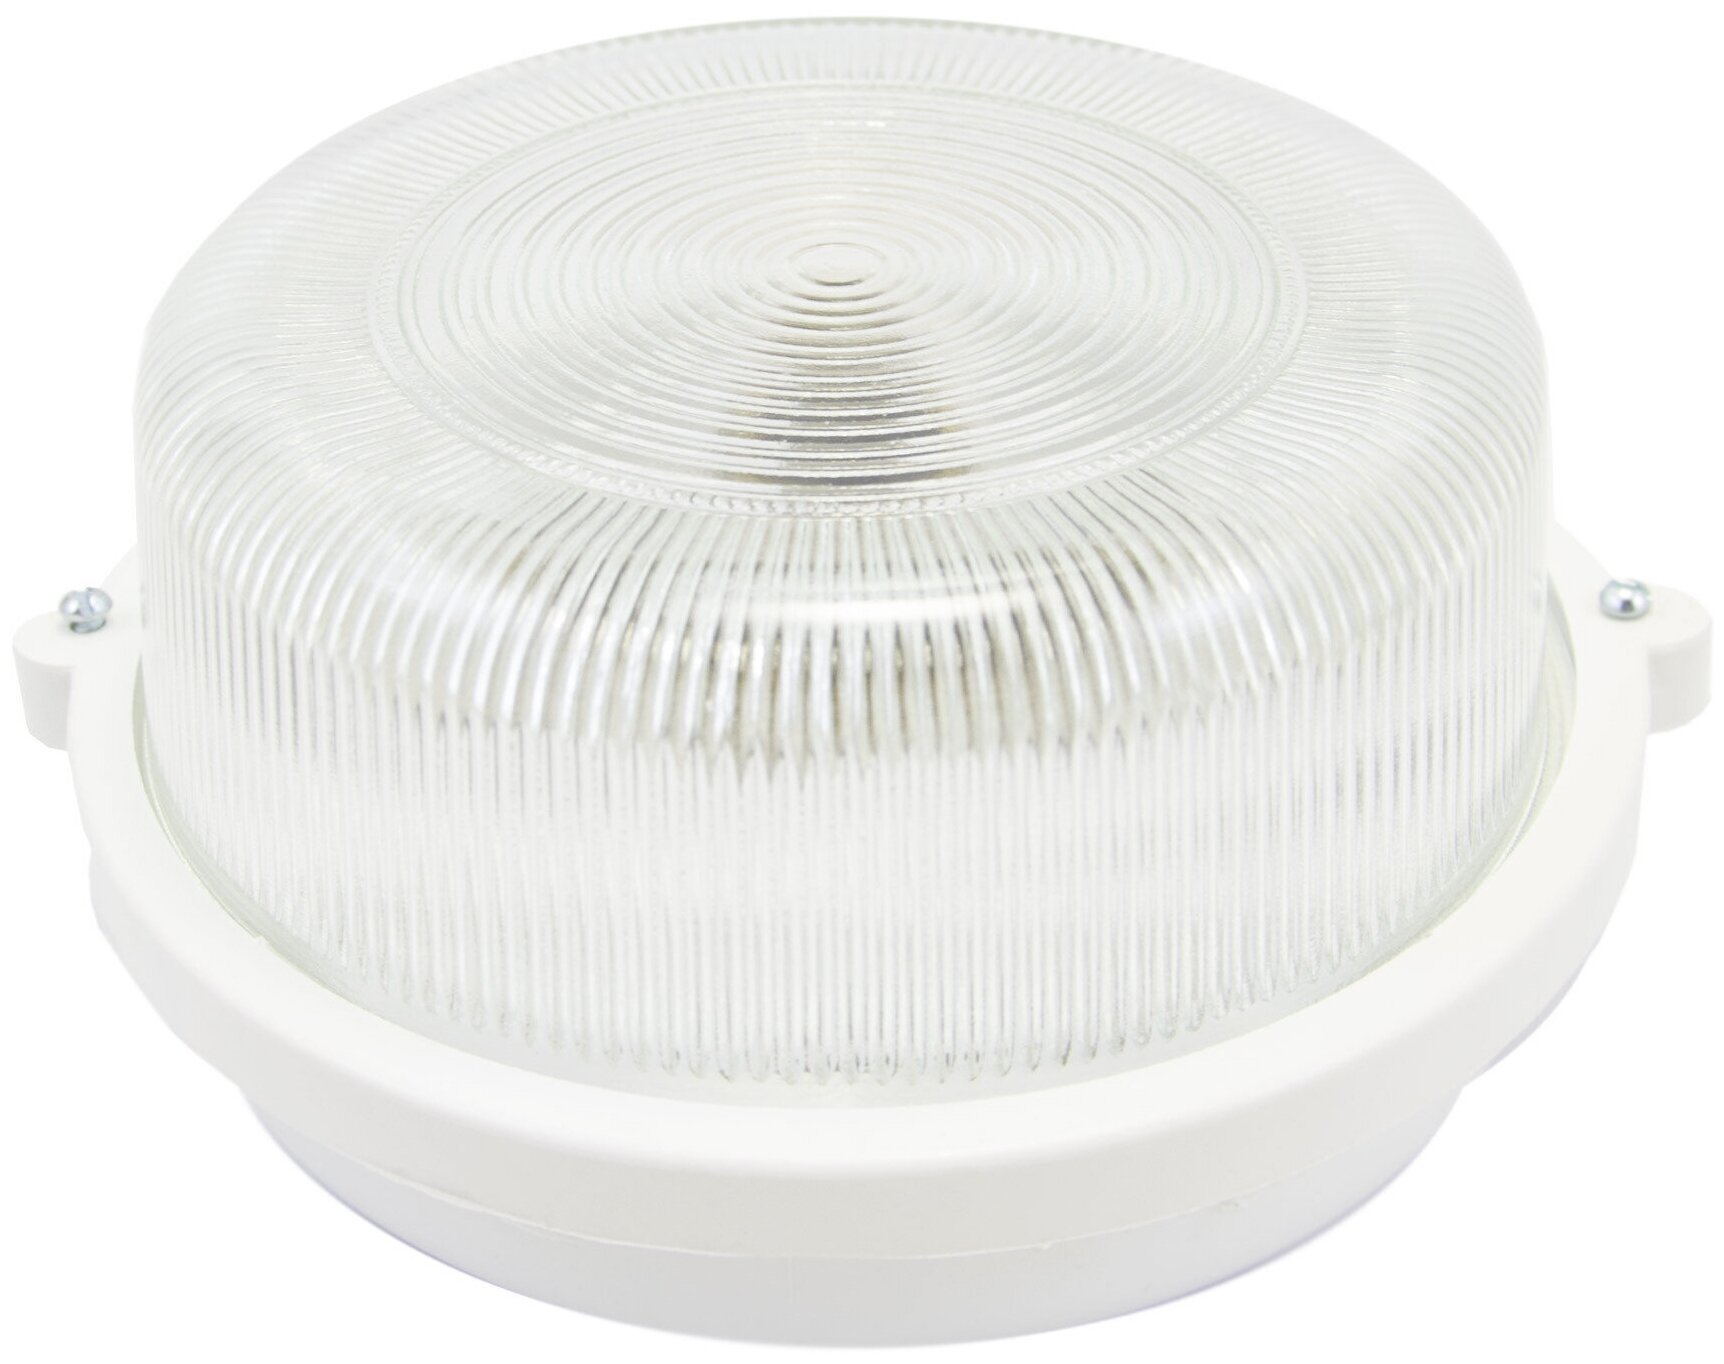 Декоративный настенный светильник с белым пластиковым корпусом и креплением на планку без ламп, на стену или потолок Е27, 100Вт, IP53, 220В